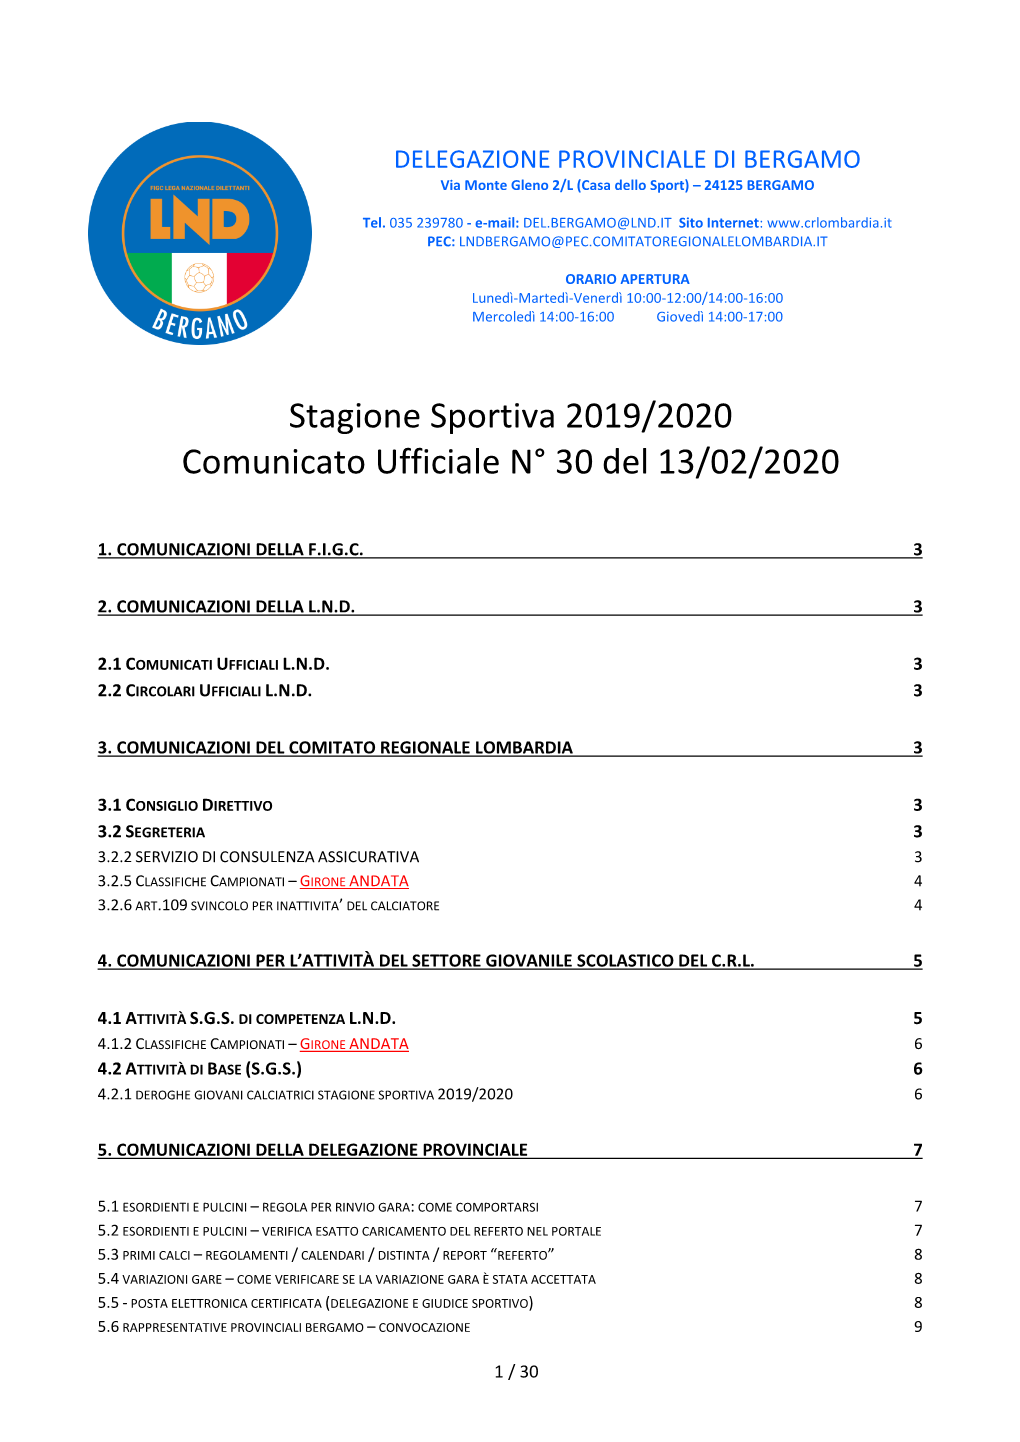 Stagione Sportiva 2019/2020 Comunicato Ufficiale N° 30 Del 13/02/2020